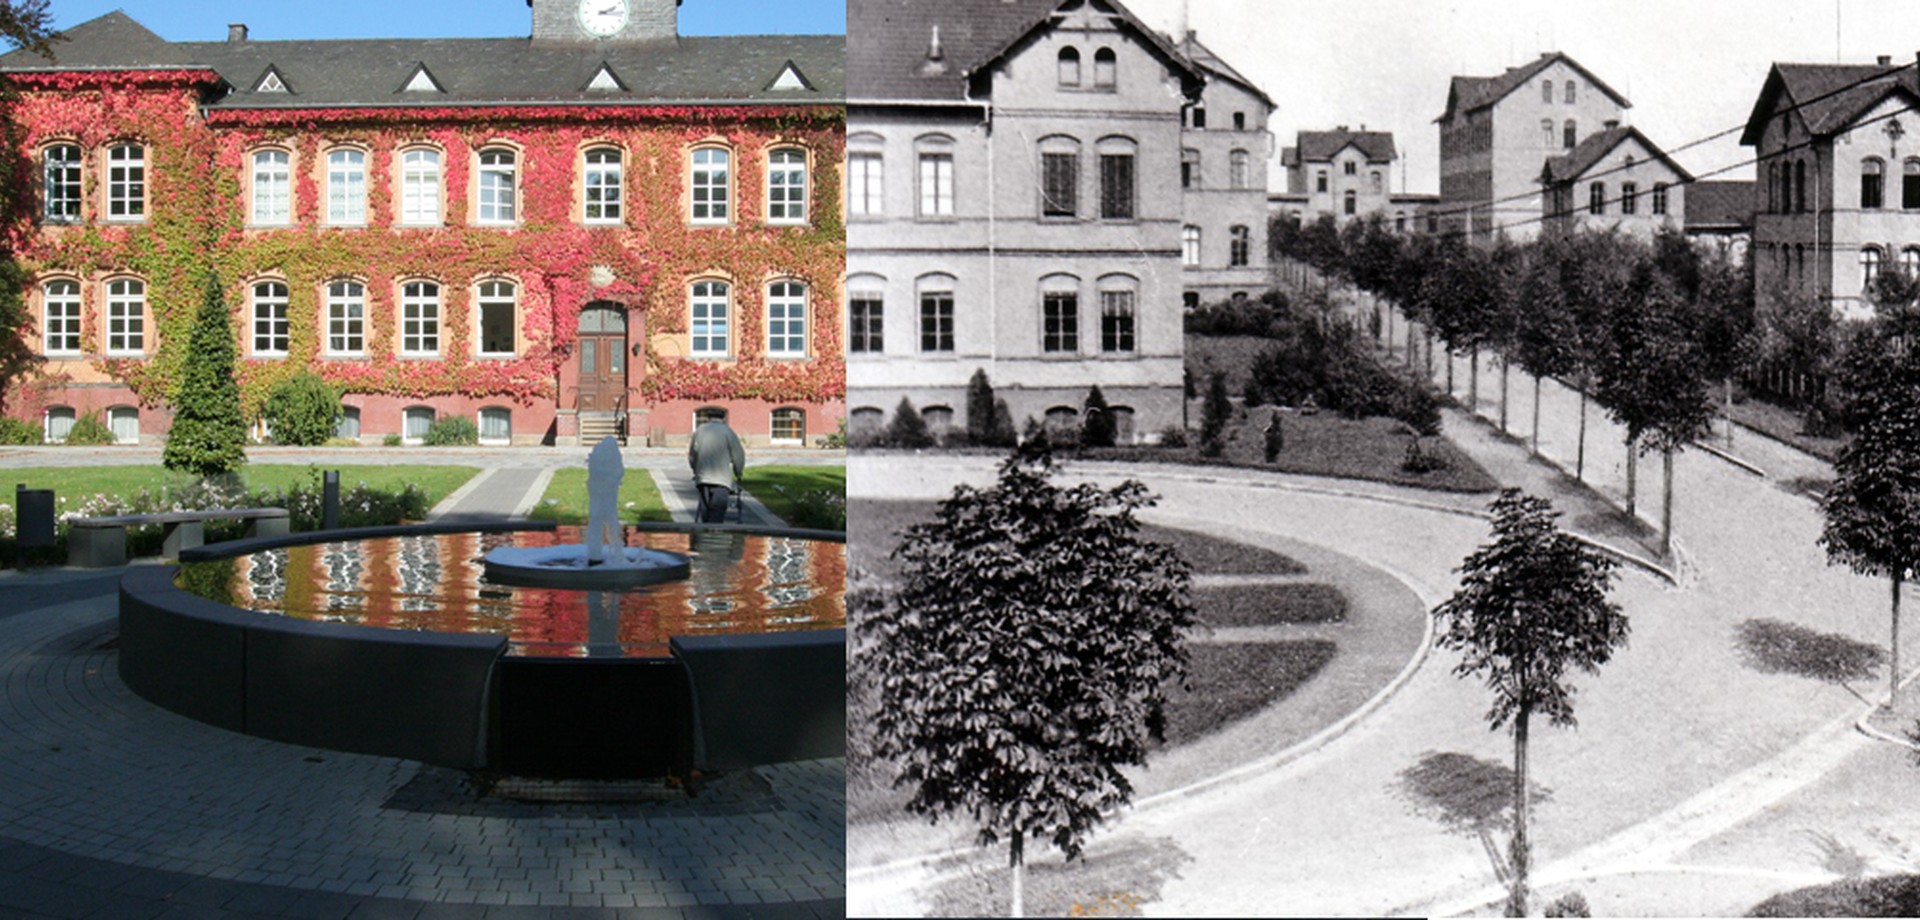 Das Verwaltungsgebäude der LWL-Klinik Dortmund, 1895 und heute in einem Fotomontage nebeneinander dargestellt.